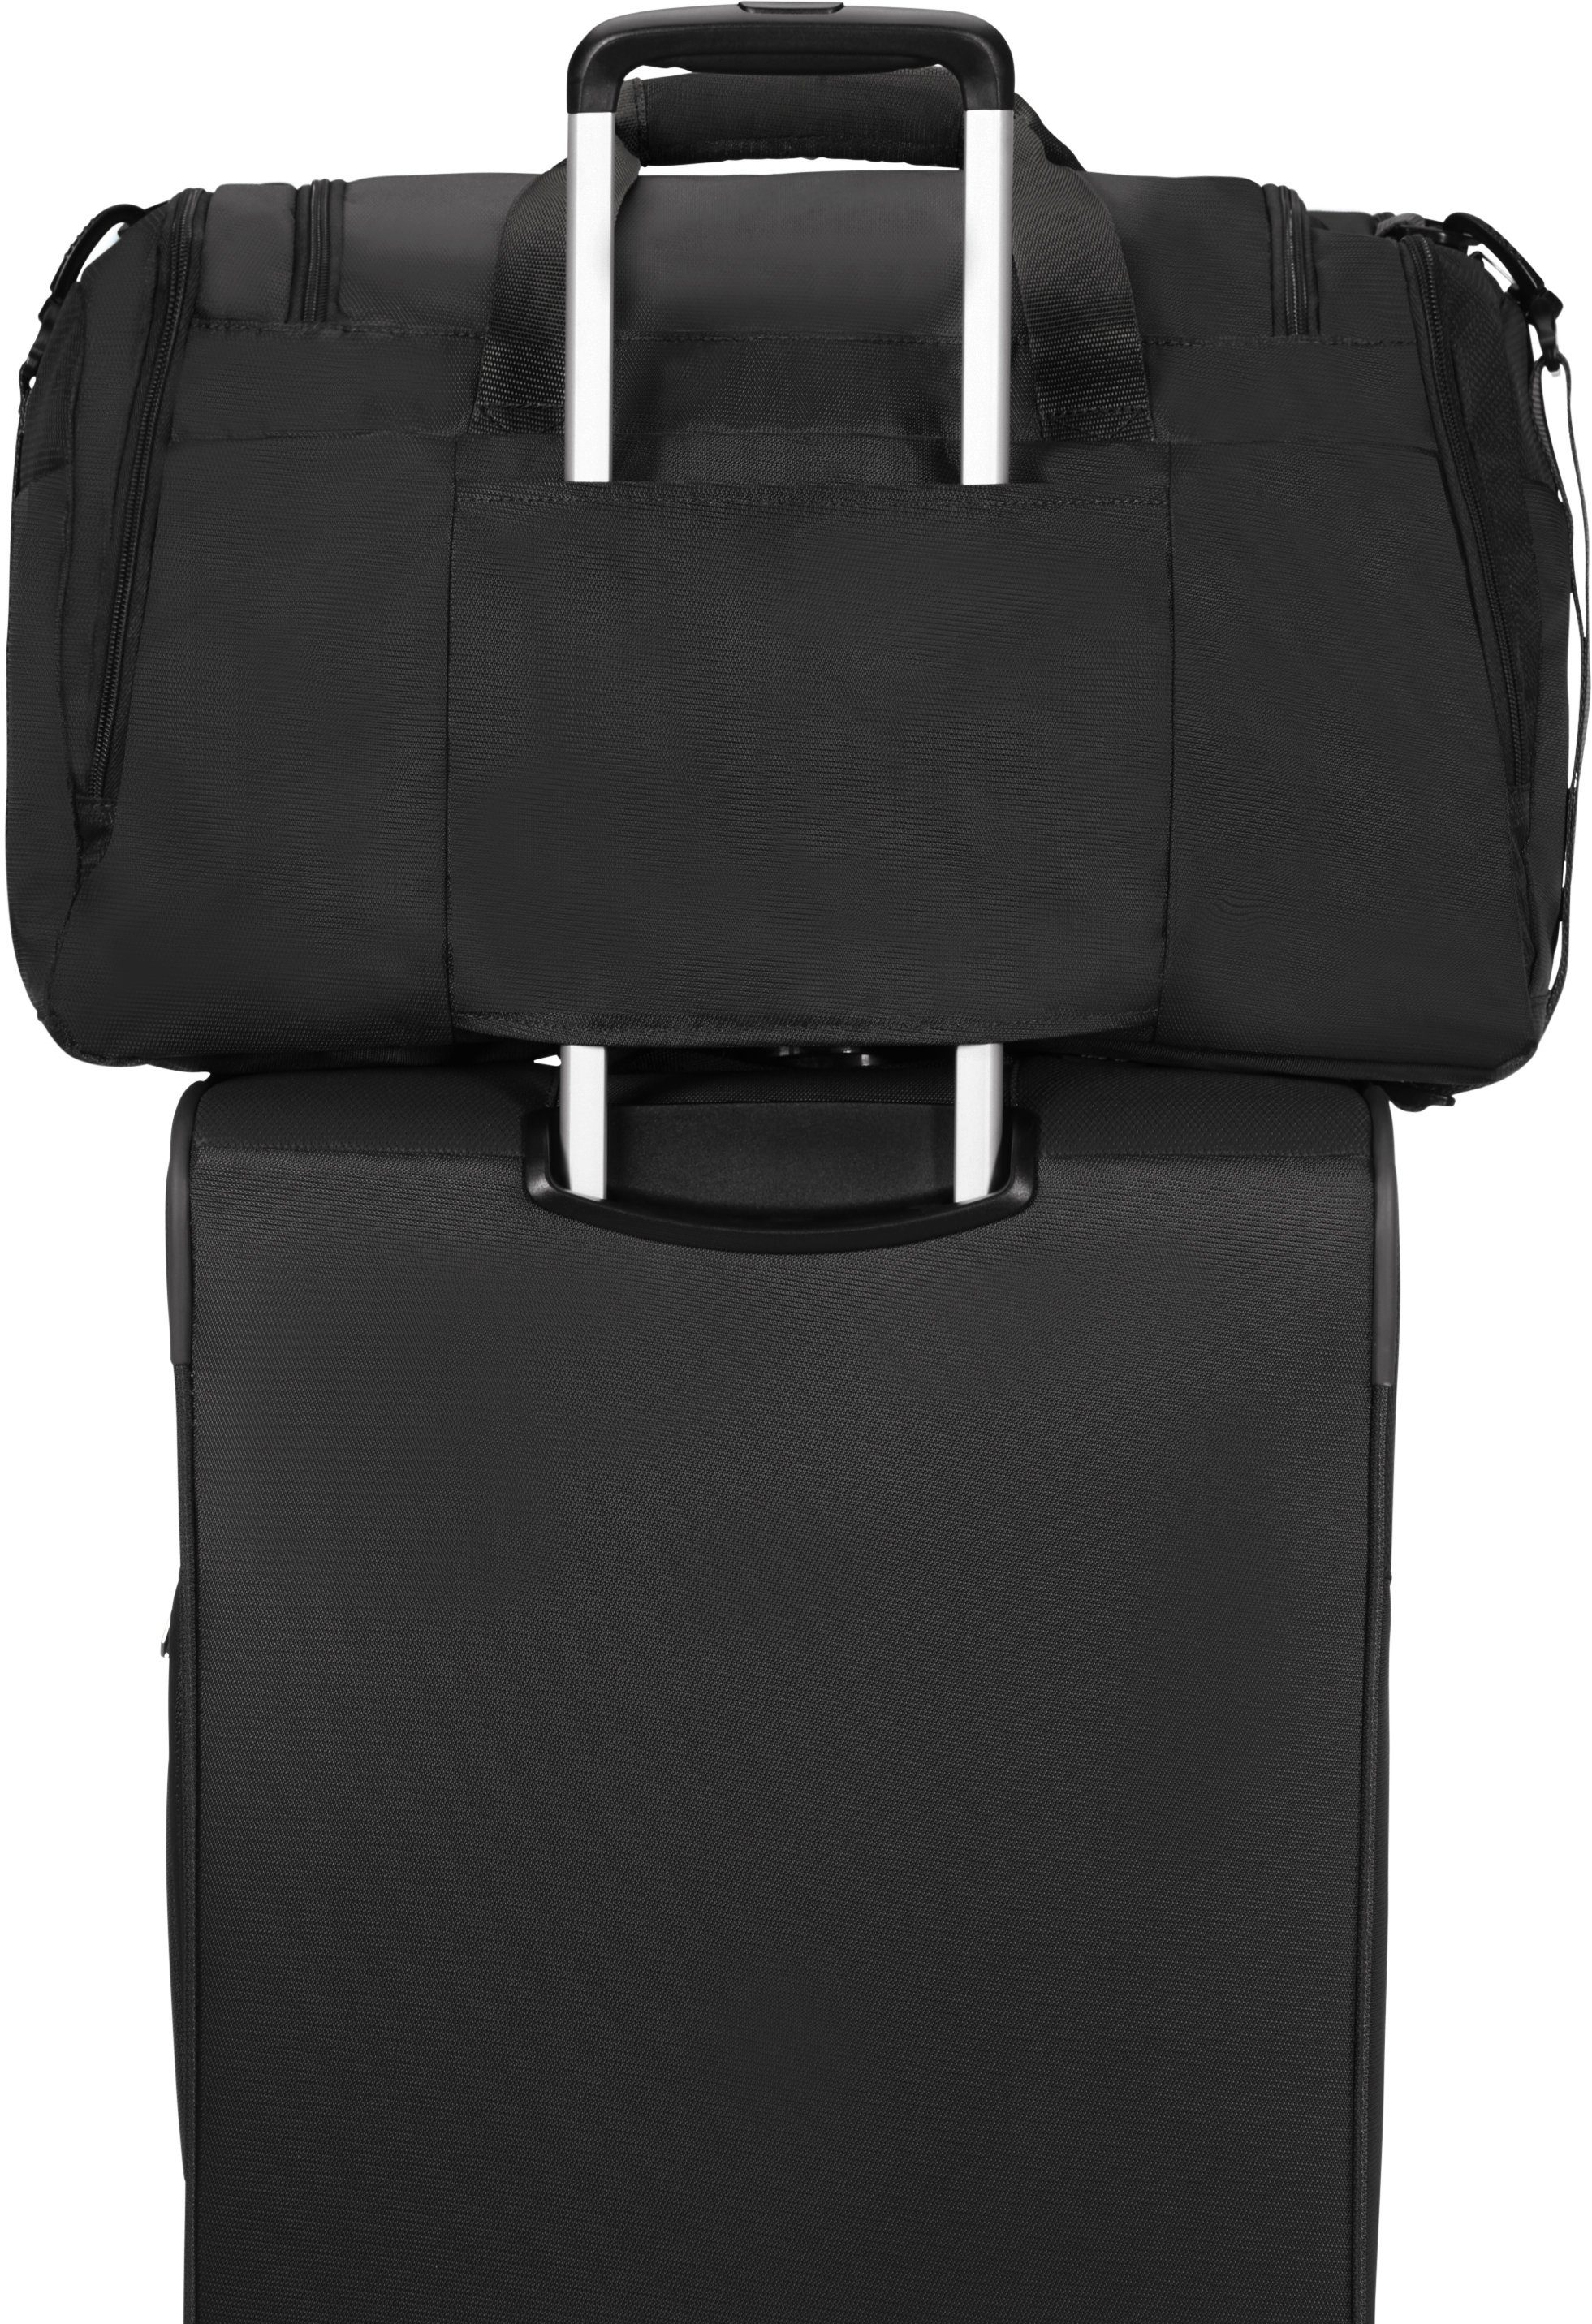 Reisetasche Trolley-Aufsteck-System American mit schwarz Summerfunk, Tourister®